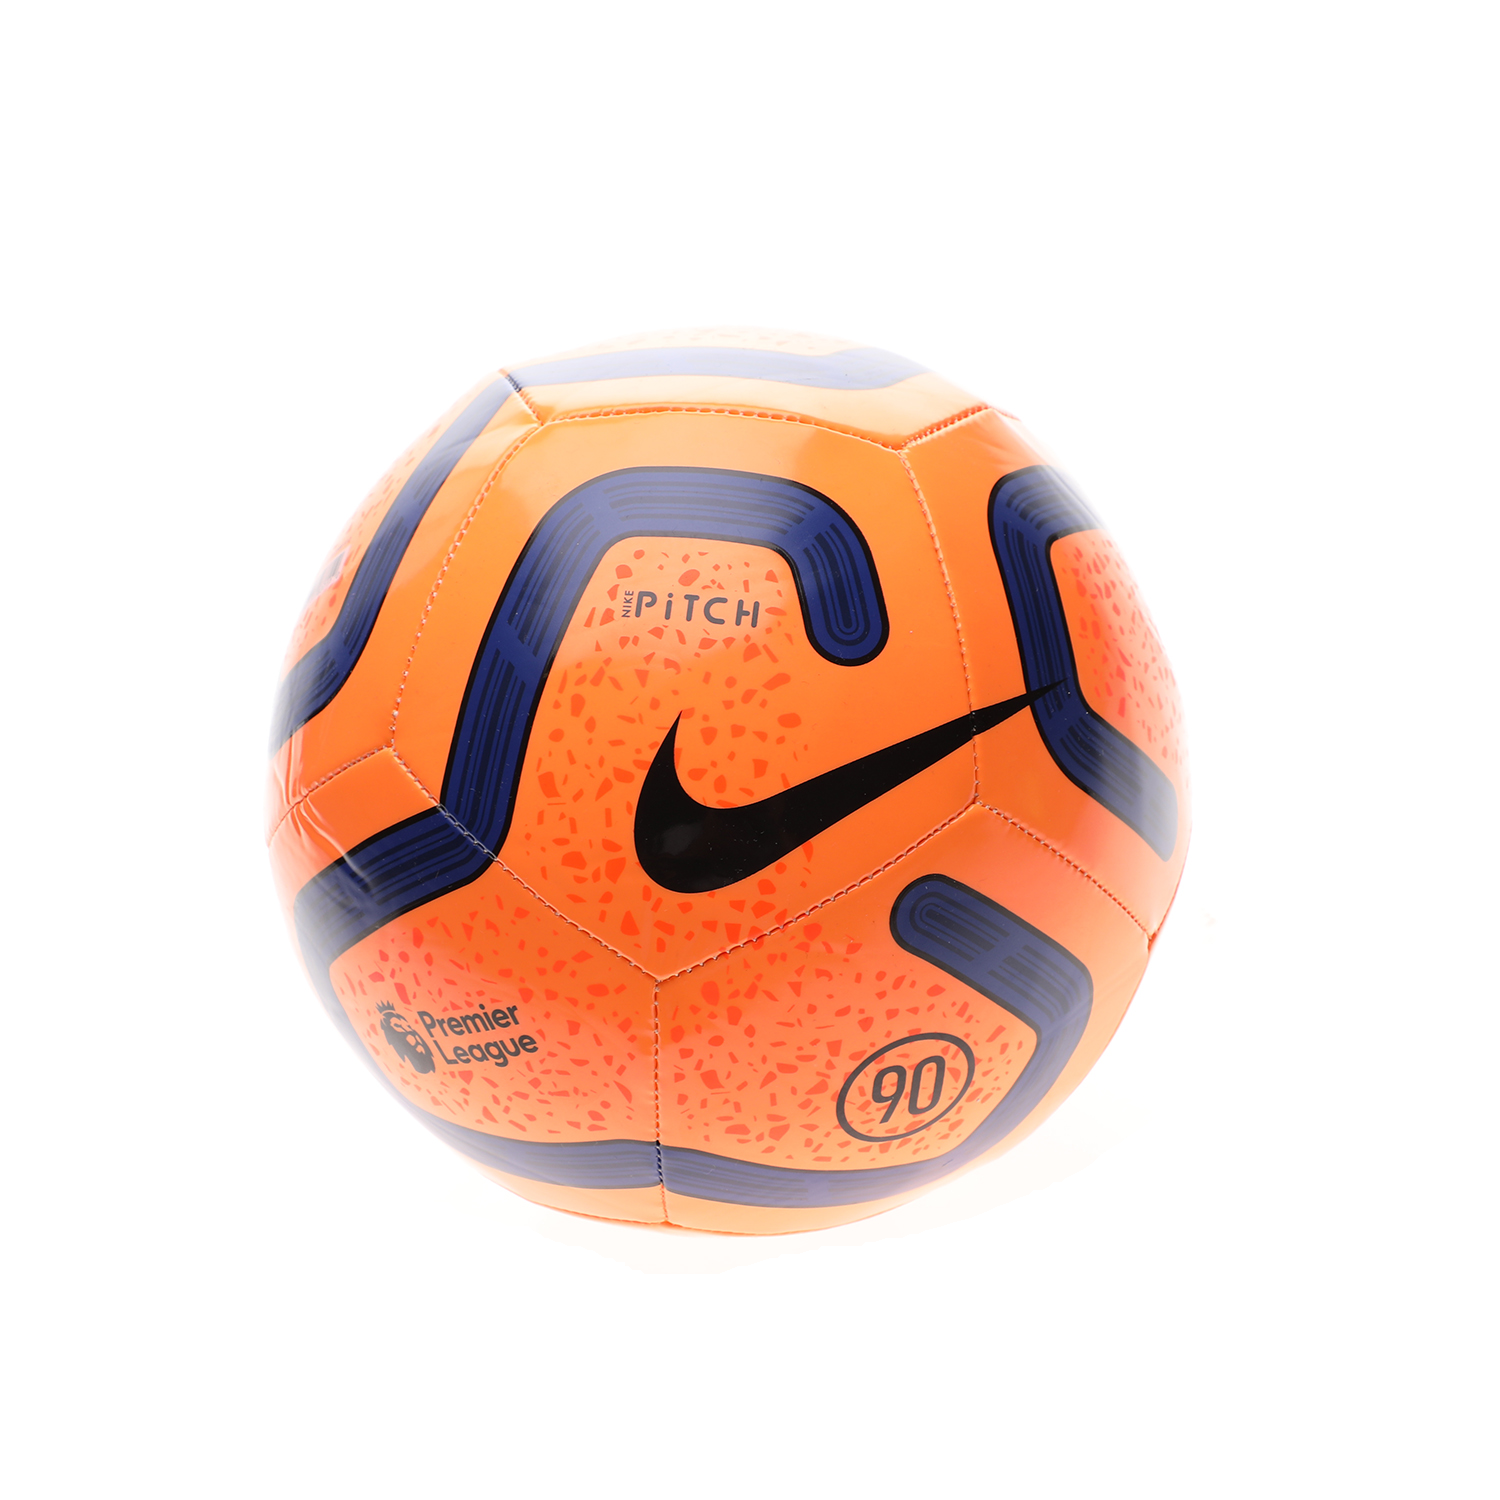 Ανδρικά/Αξεσουάρ/Αθλητικά Είδη/Μπάλες NIKE - Μπάλα ποδοσφαίρου NIKE PL NK PTCH-FA19 πορτοκαλί μπλε